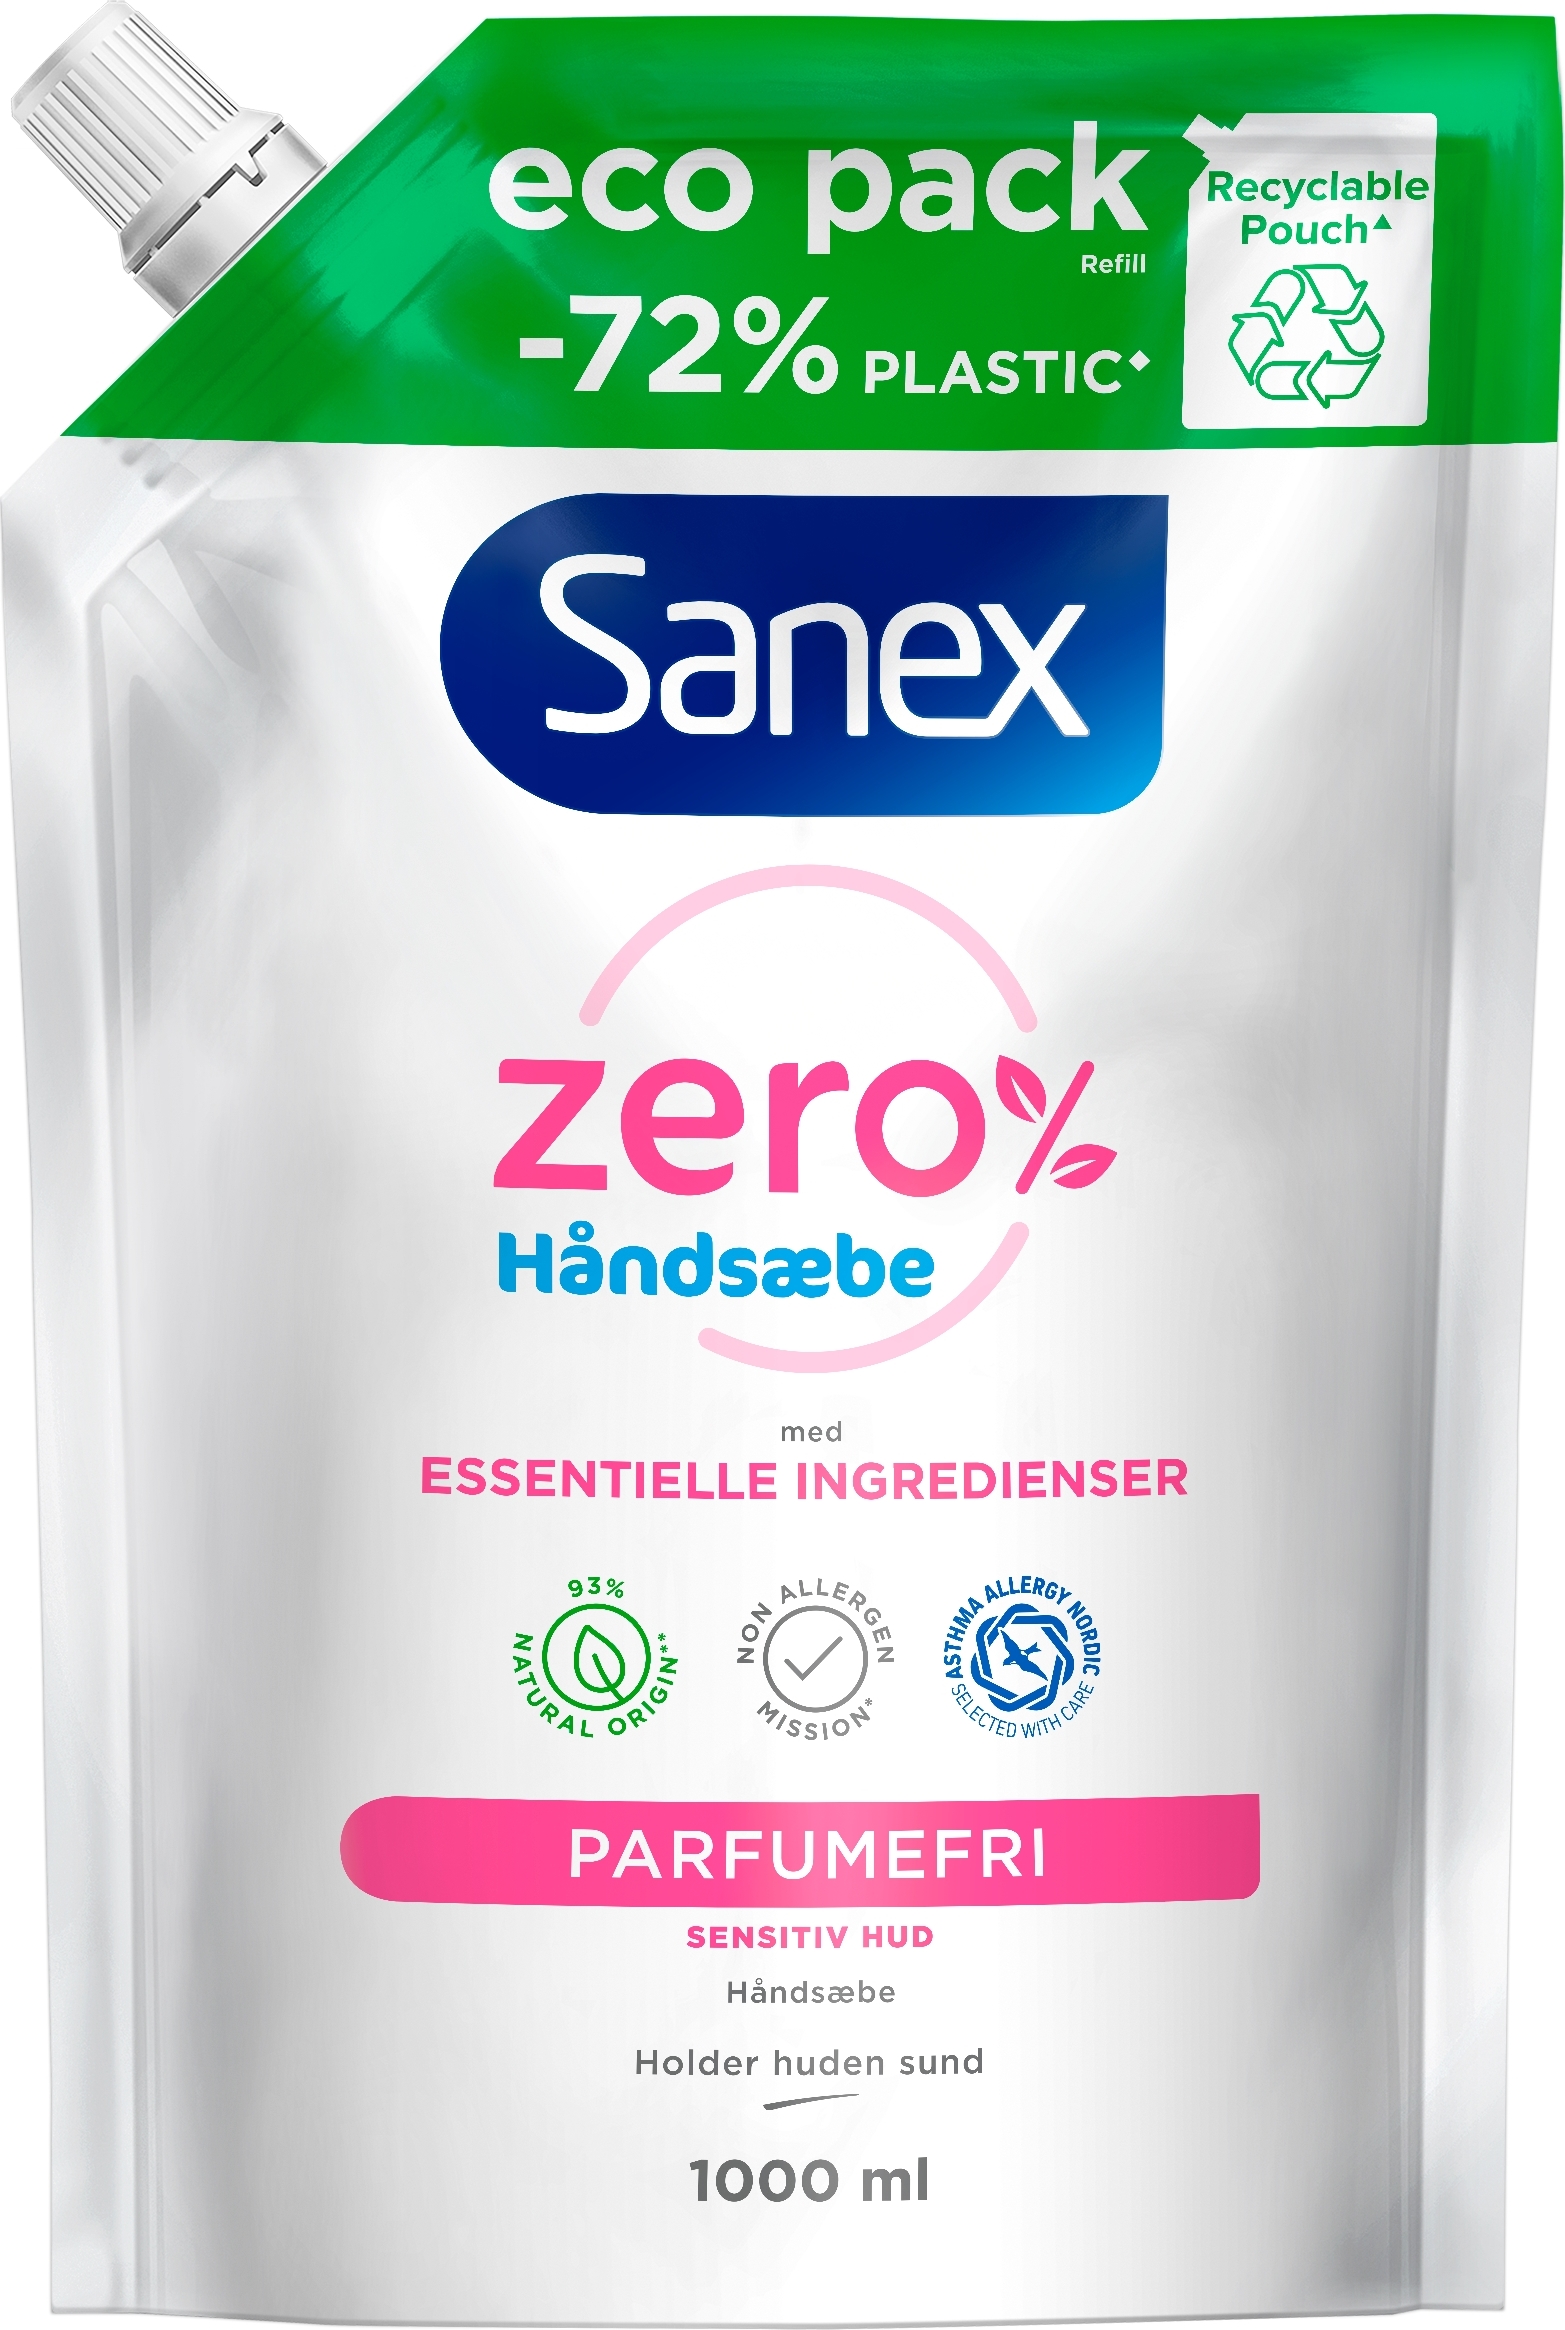 Sanex Handtvål | Refill | Zero % | 1000 ml